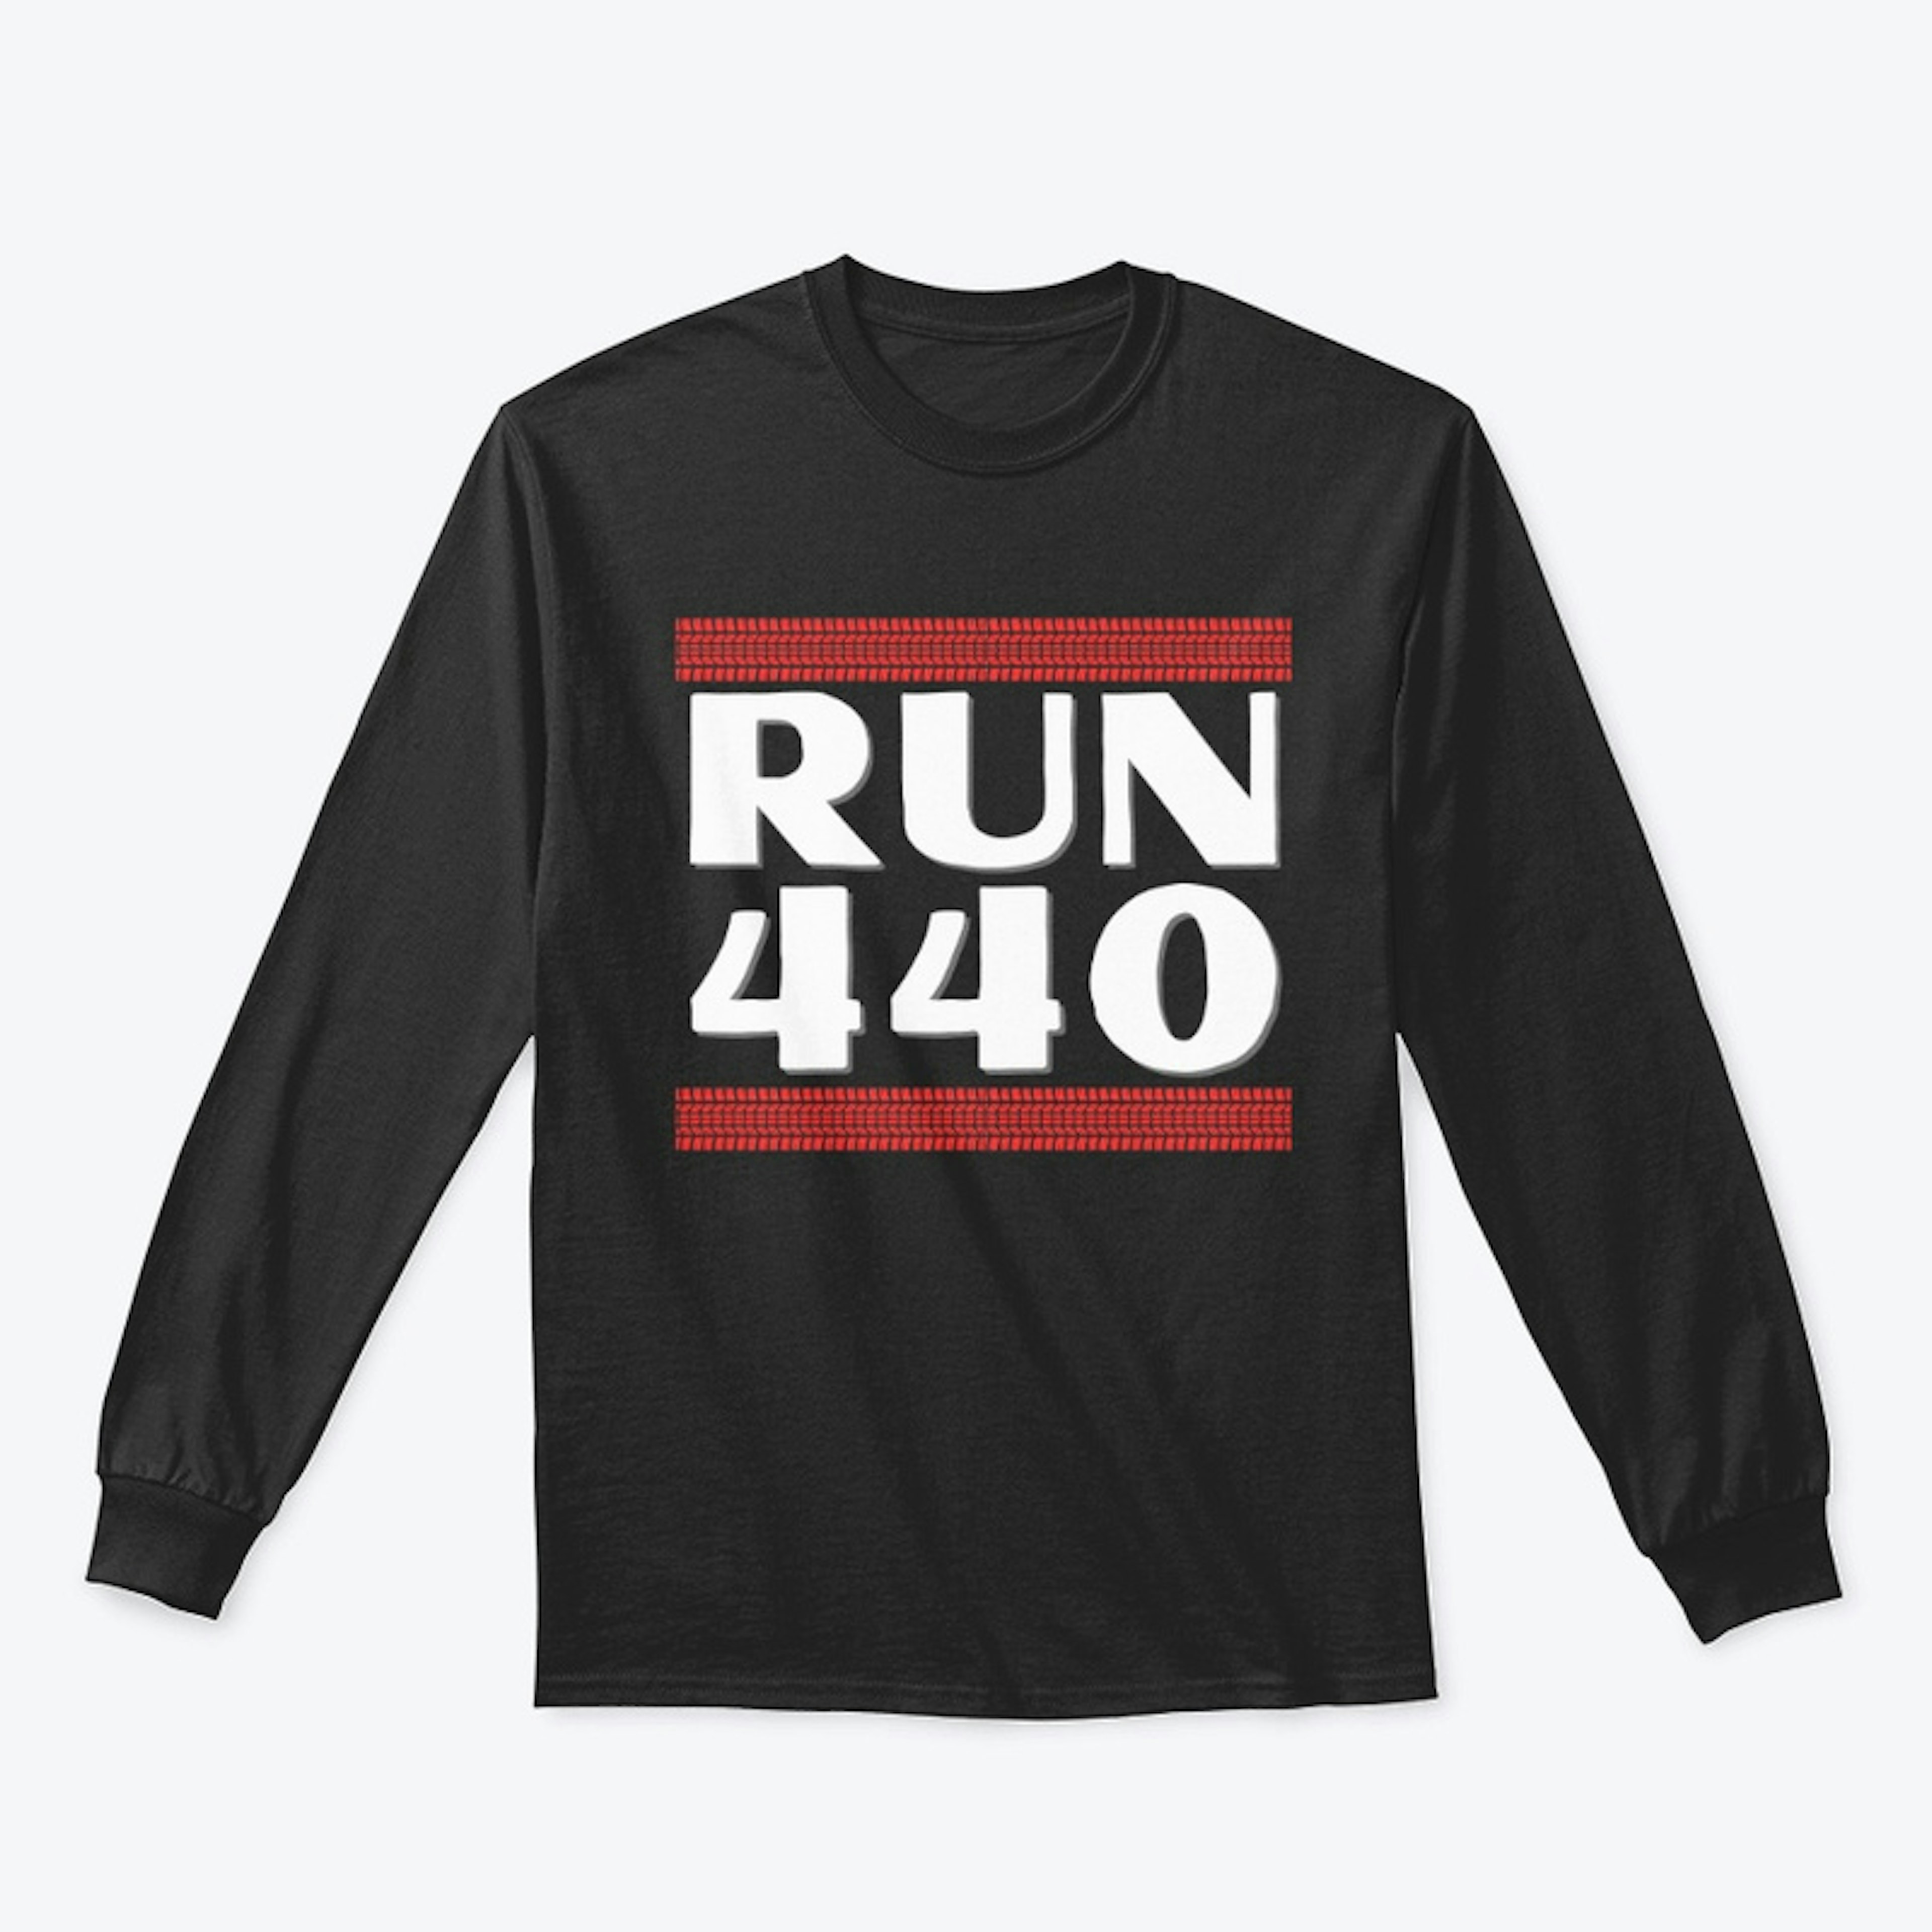 Run 440